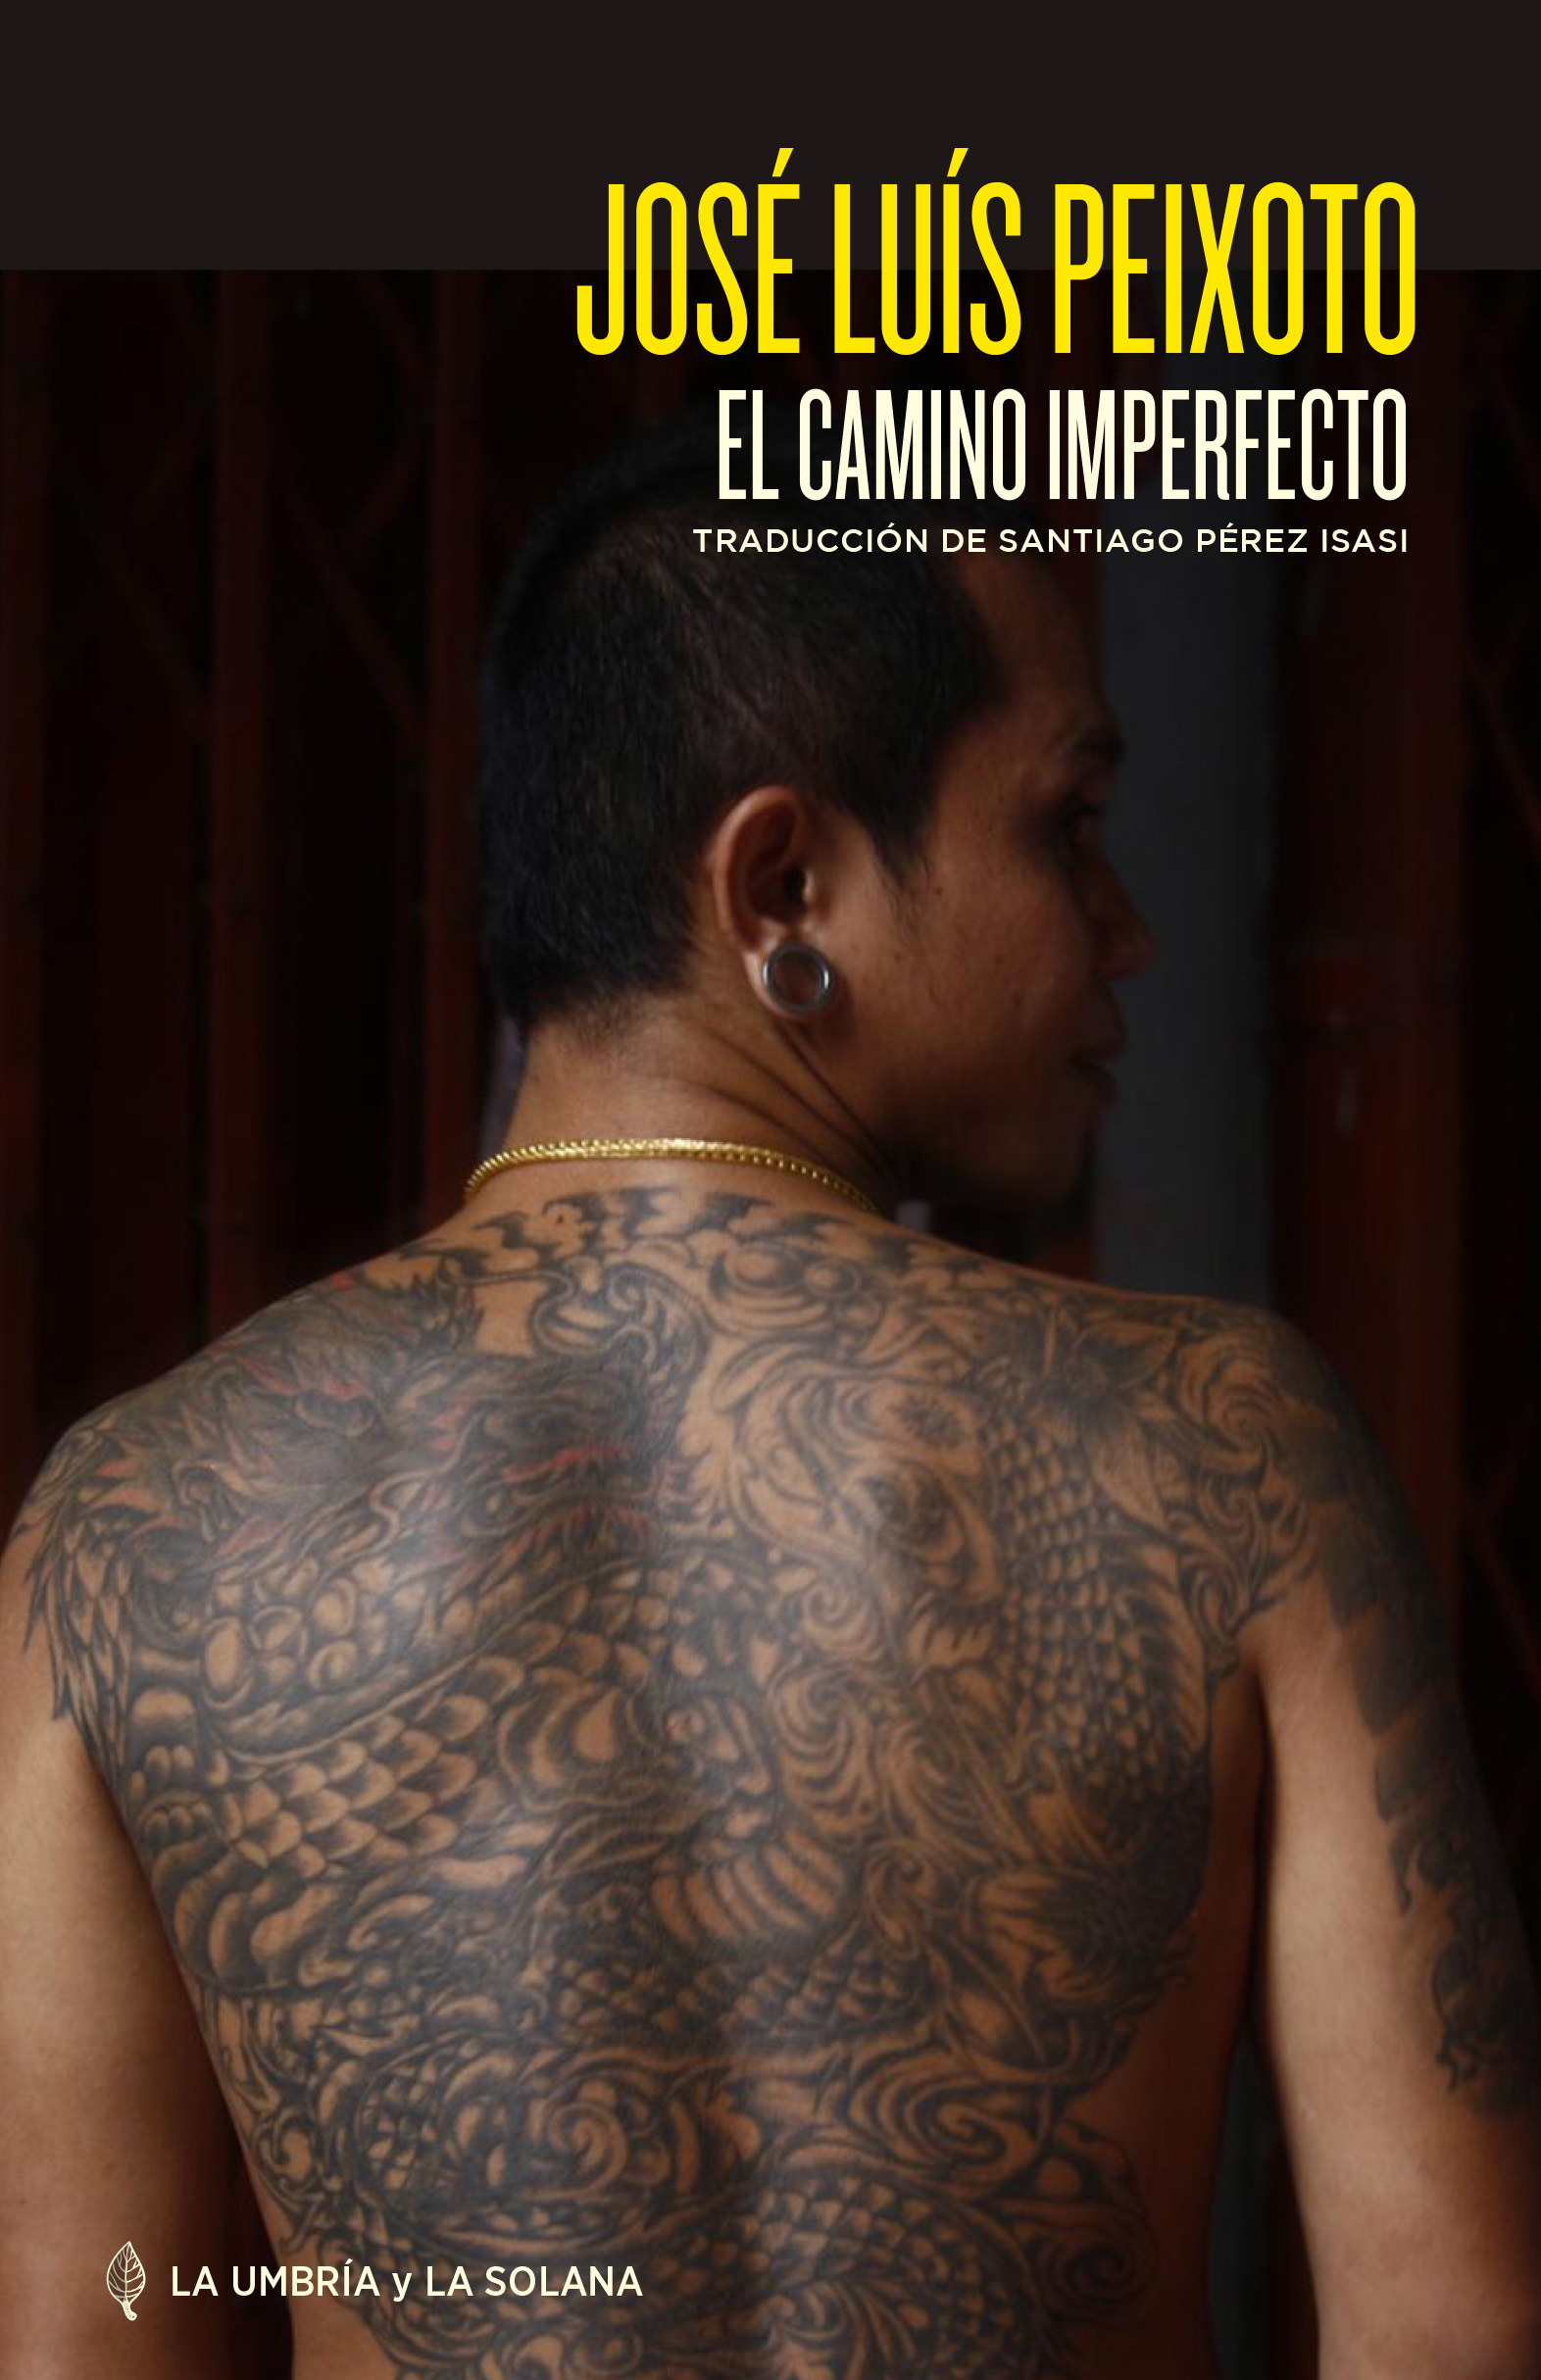 JOSÉ LUÍS PEIXOTO presenta y firma 'El camino imperfecto' (La umbría y la solana)